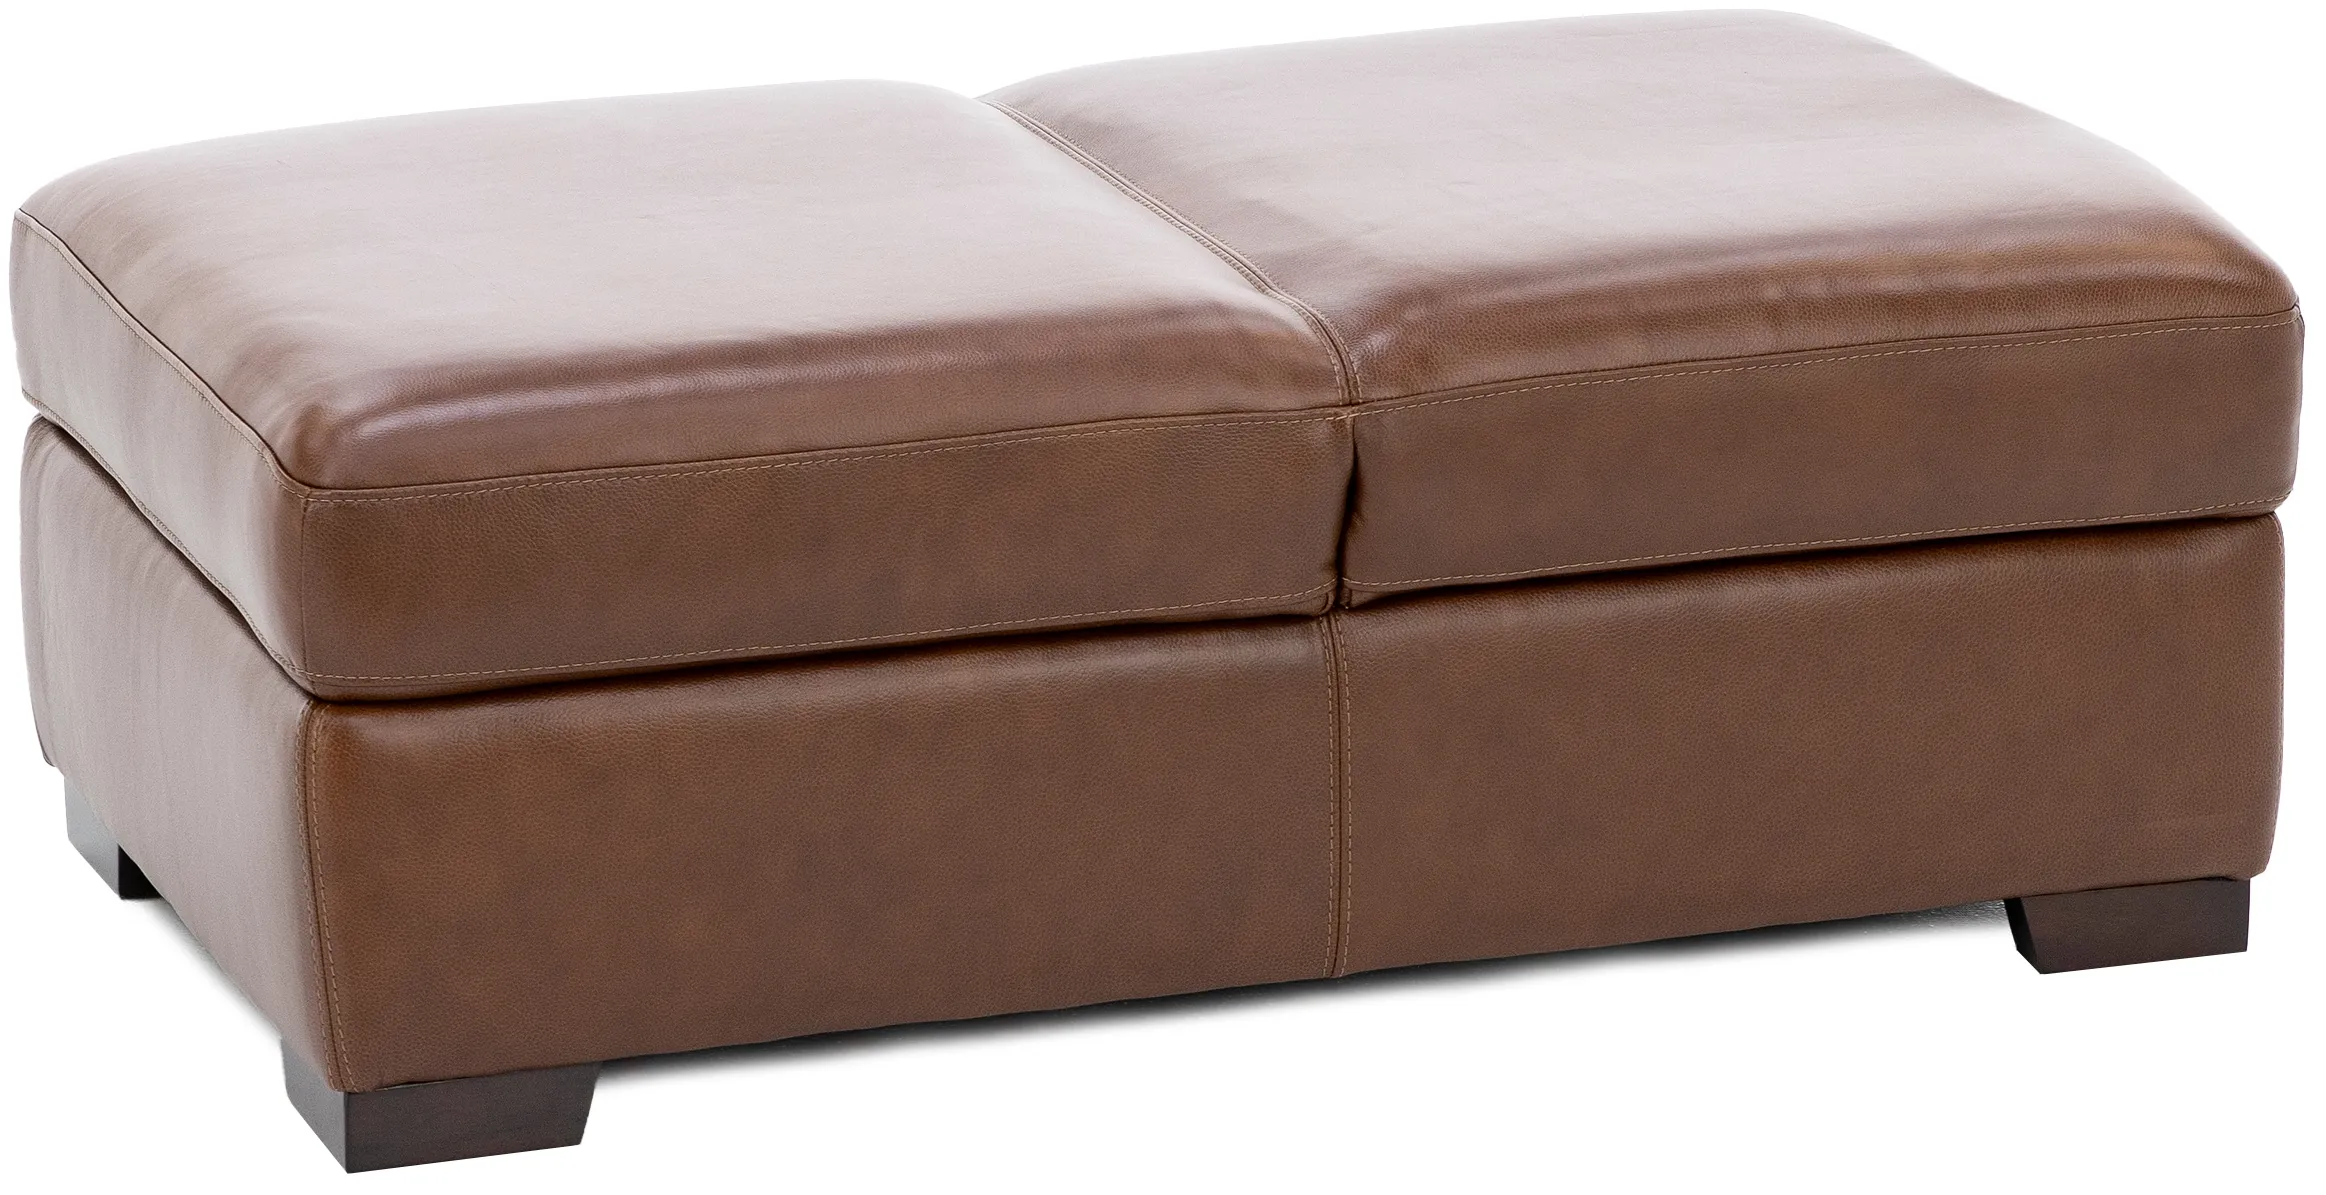 Everest Leather Storage Seat Ottoman in Chestnut